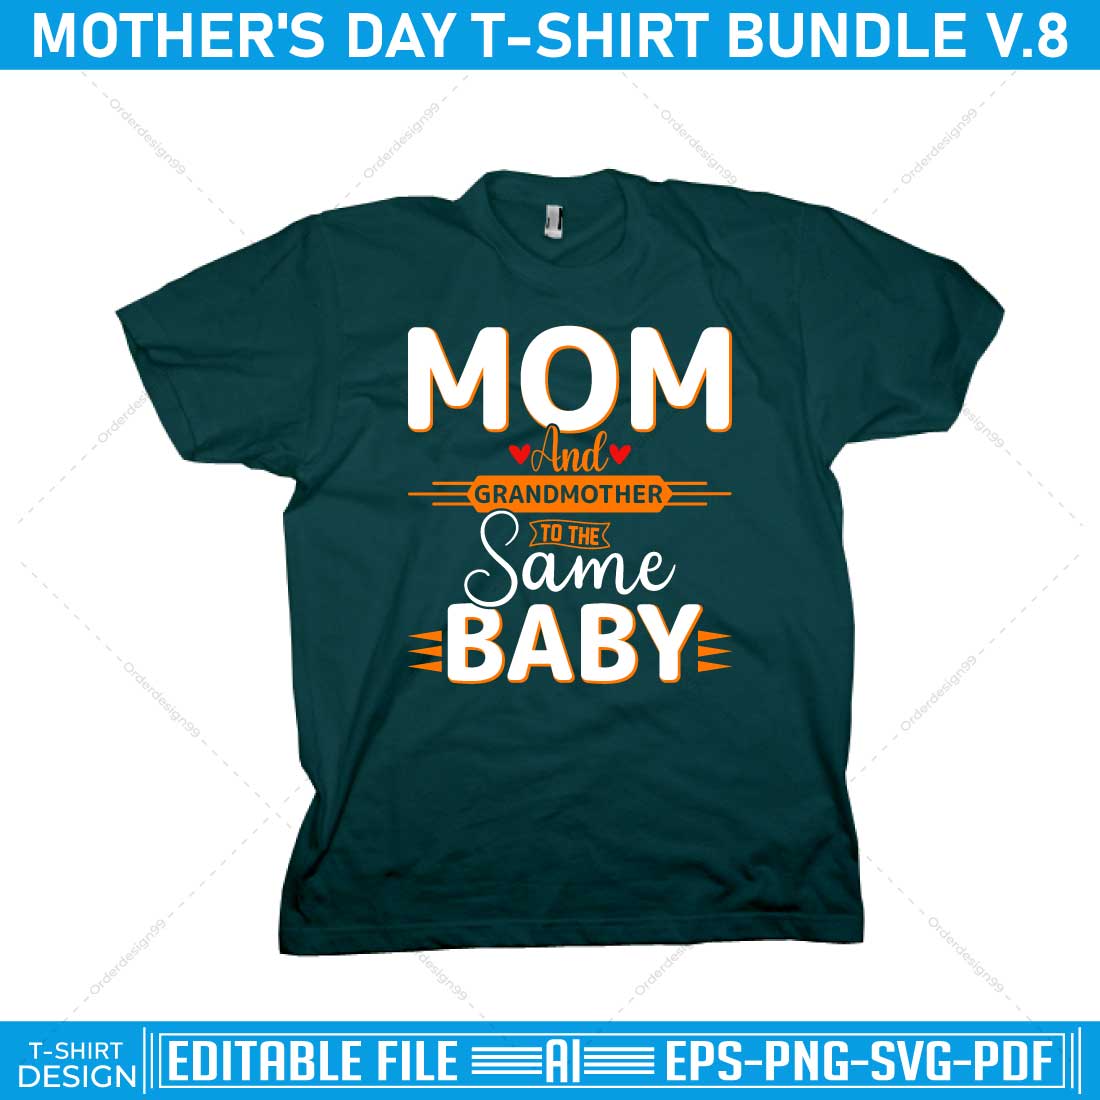 mothers day t shirt bundle v.8 p3 784